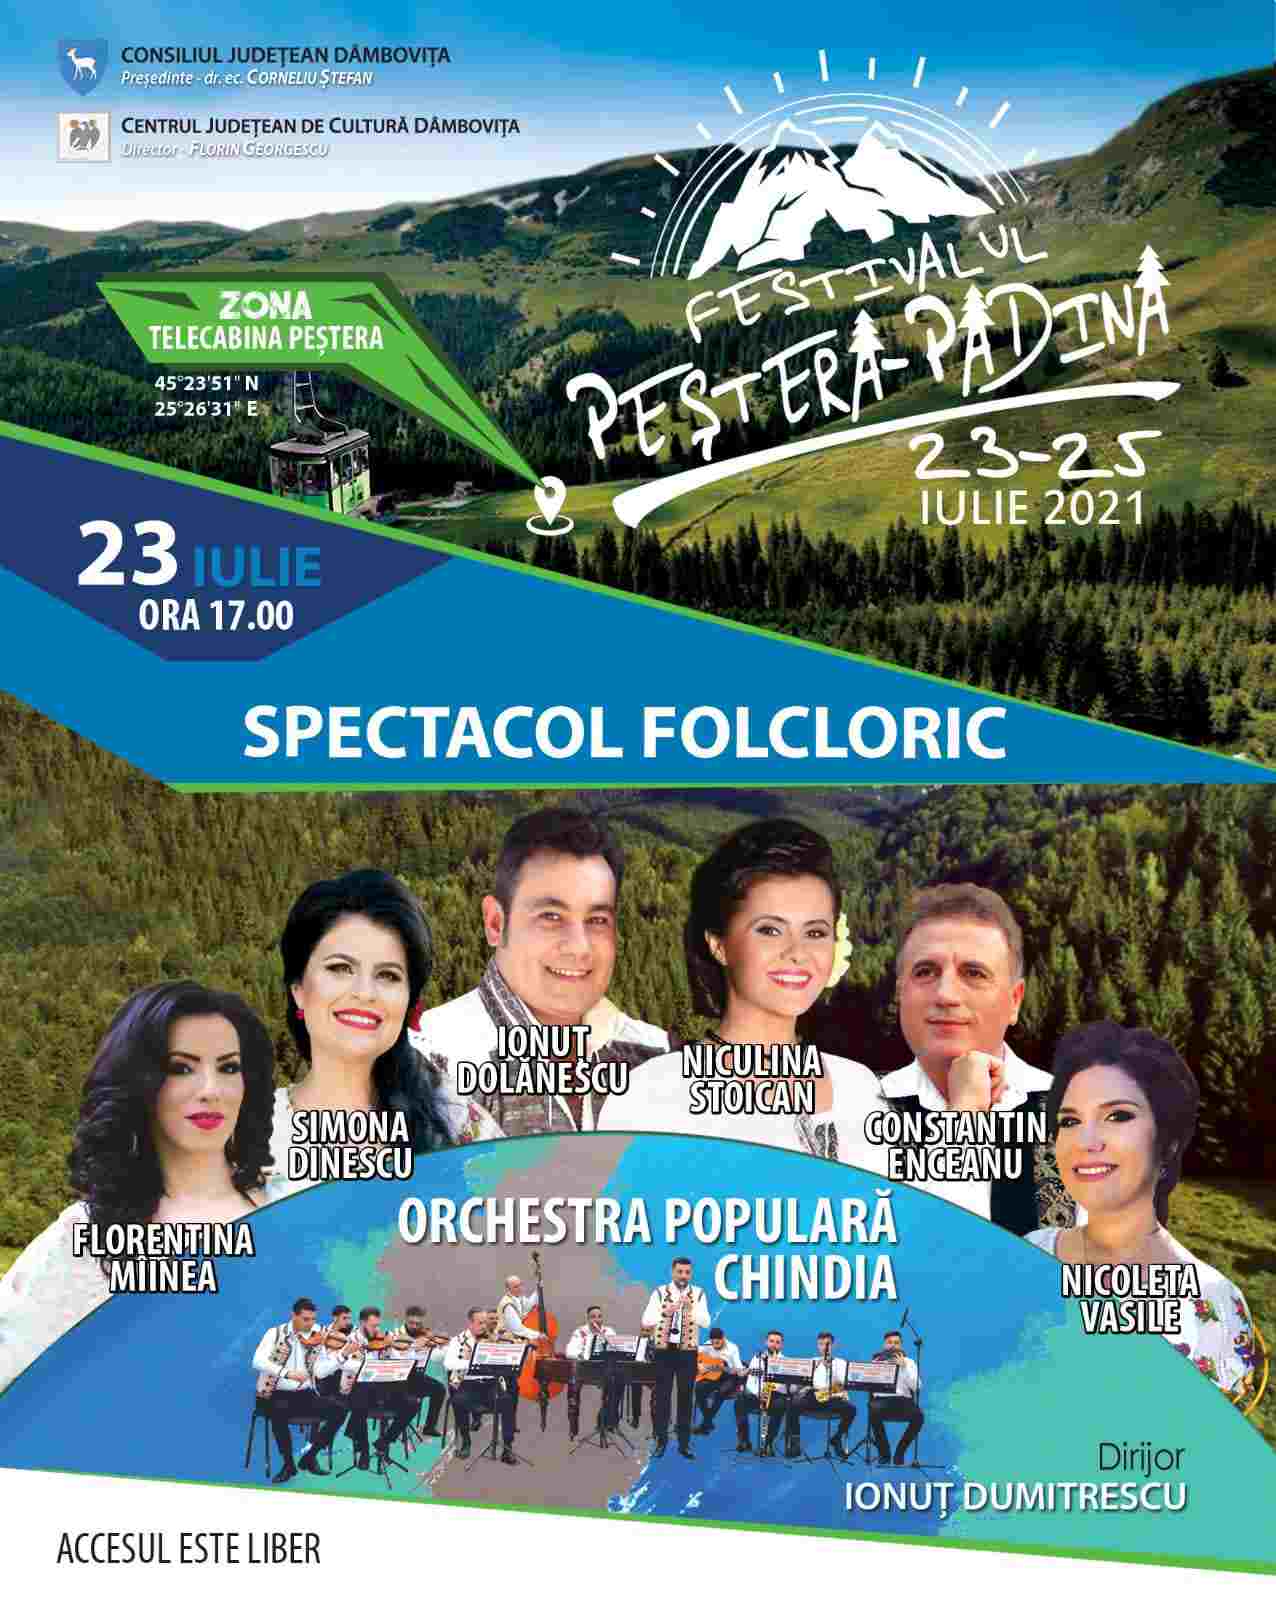  Festivalul Peștera-Padina revine cu o nouă ediție